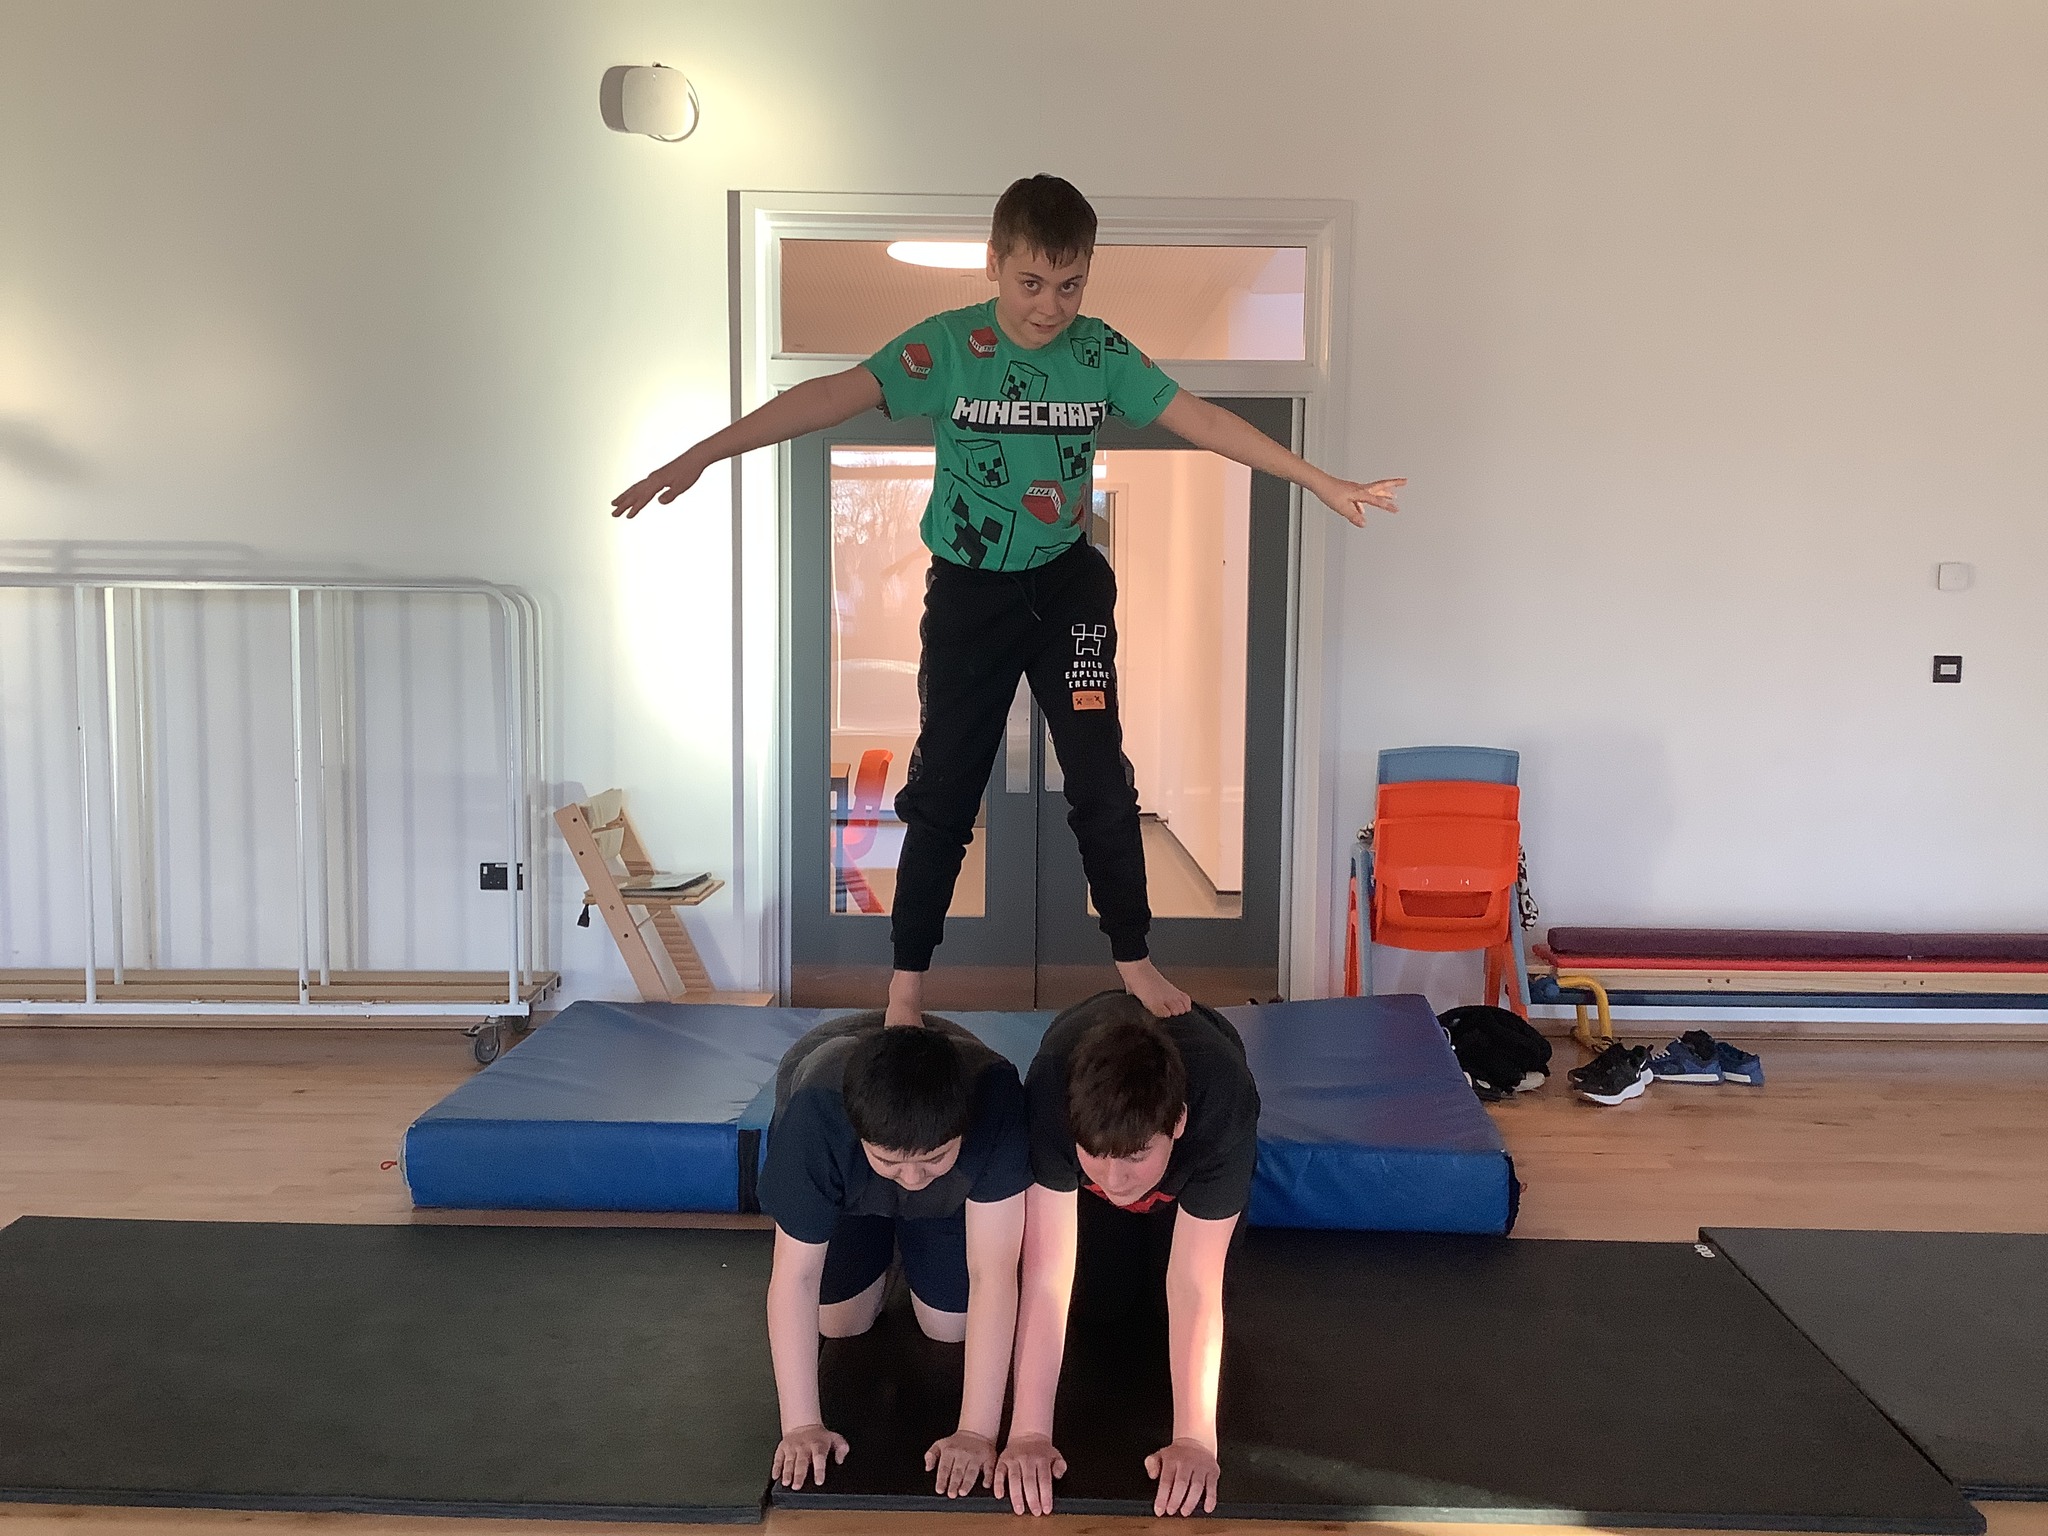 Gymnastics fun at Alfreton school